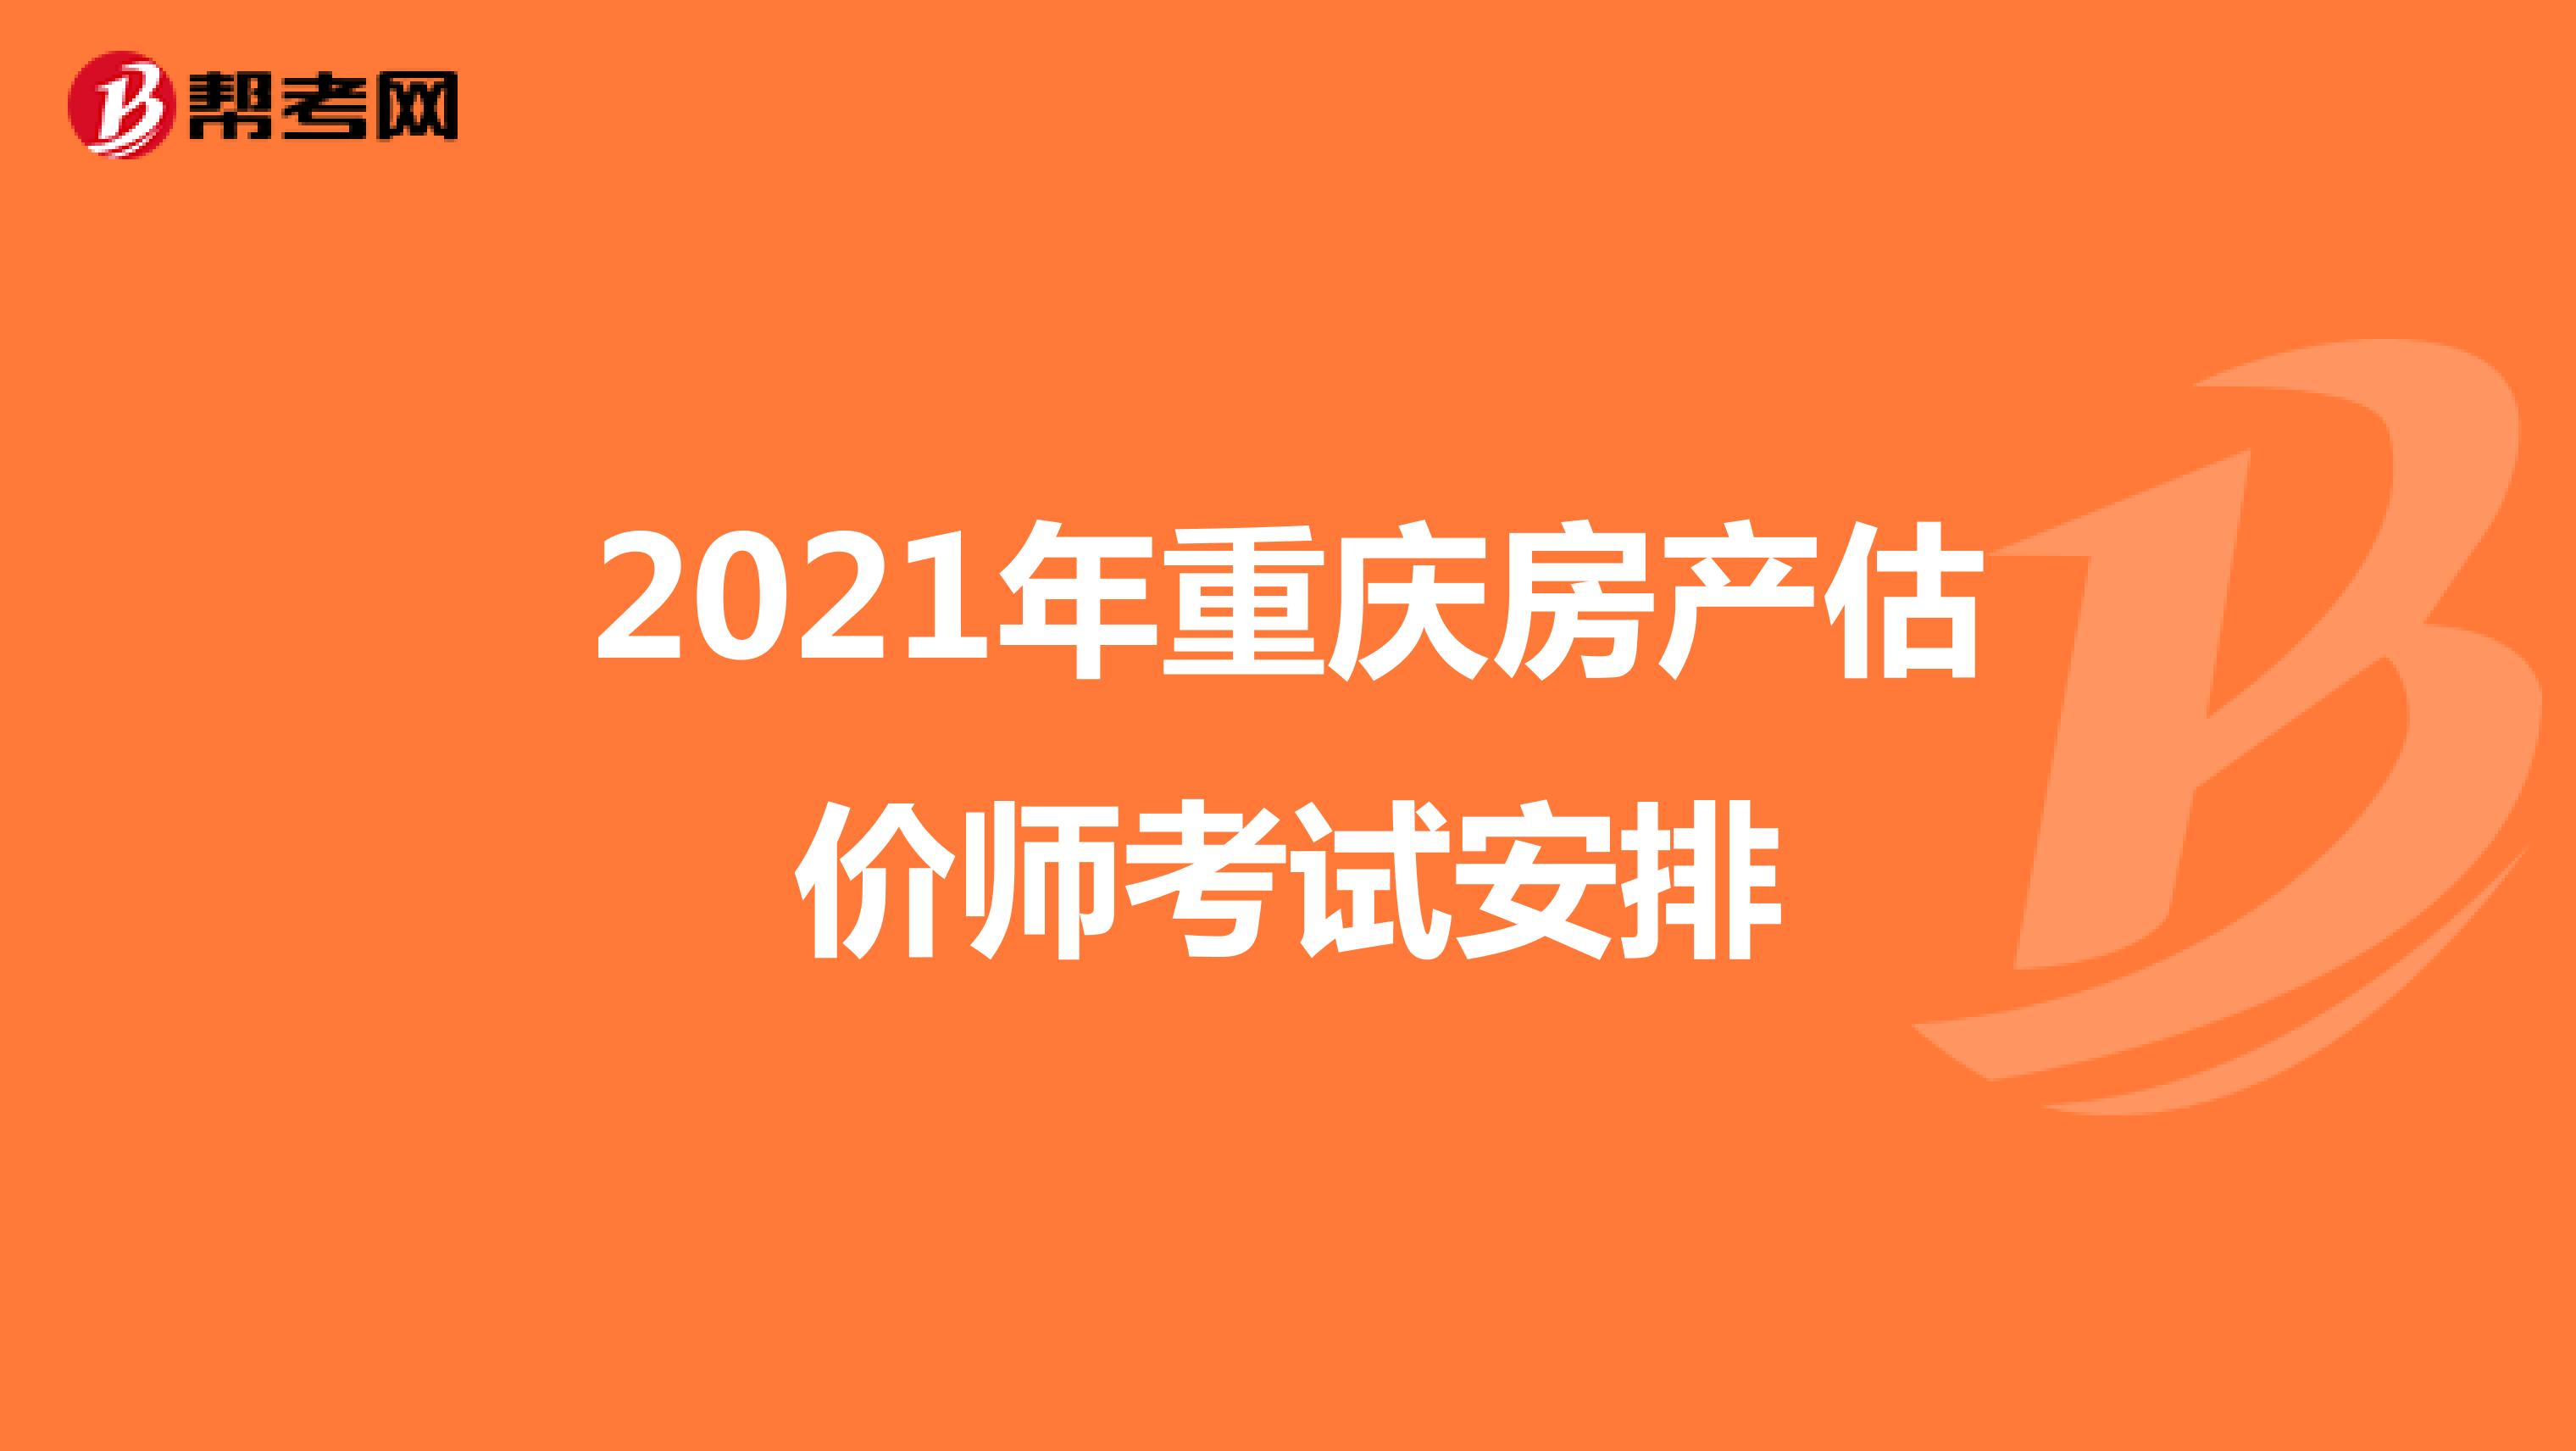 2021年重庆房产估价师考试安排